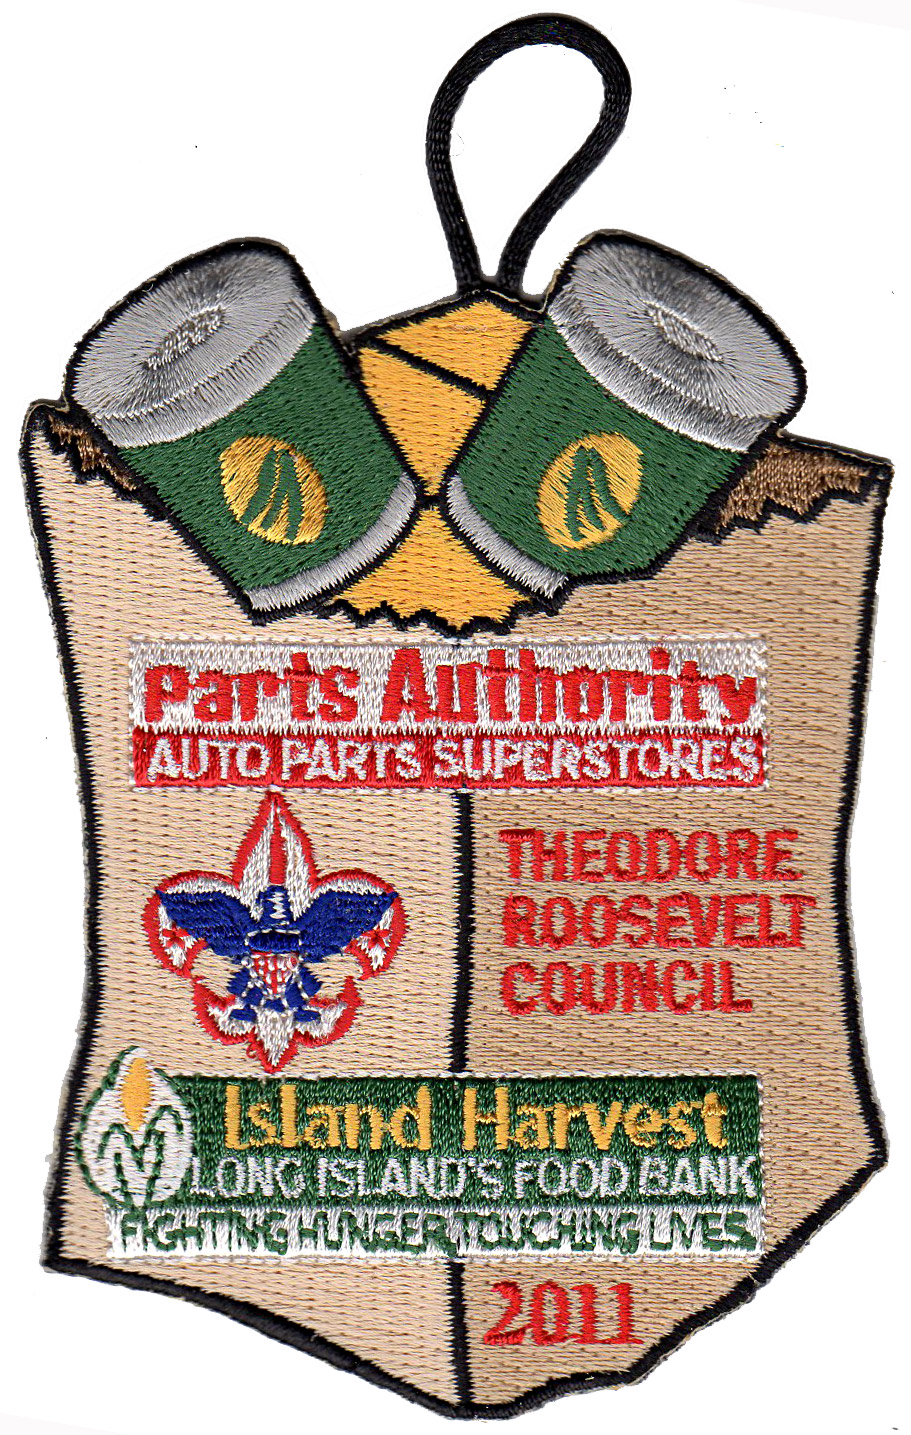 2011 Island Harvest